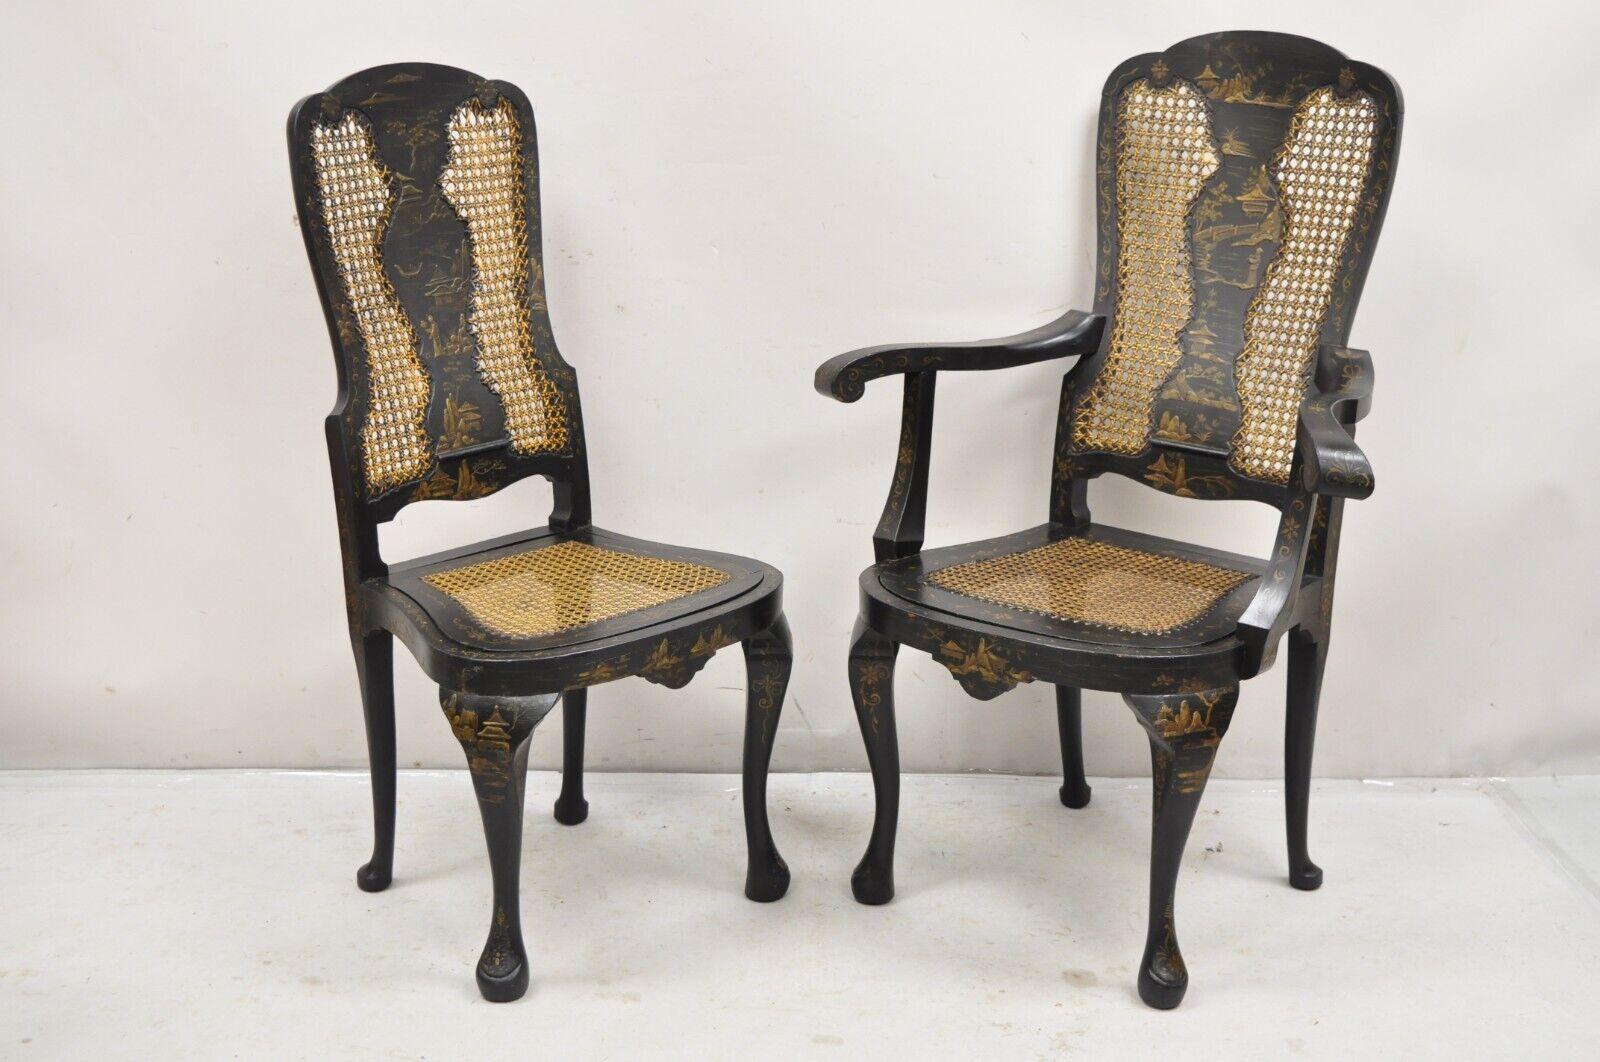 Antike Chinoiserie English Queen Anne Hand Painted Floral Cane Dining Chairs - Set von 4. Set besteht aus 2 Stühlen und 2 Sesseln mit Drop Cane Sitze und bemerkenswerte florale gemalt Detail. Um 1900.
Abmessungen: 
(2) Sessel: 44,5